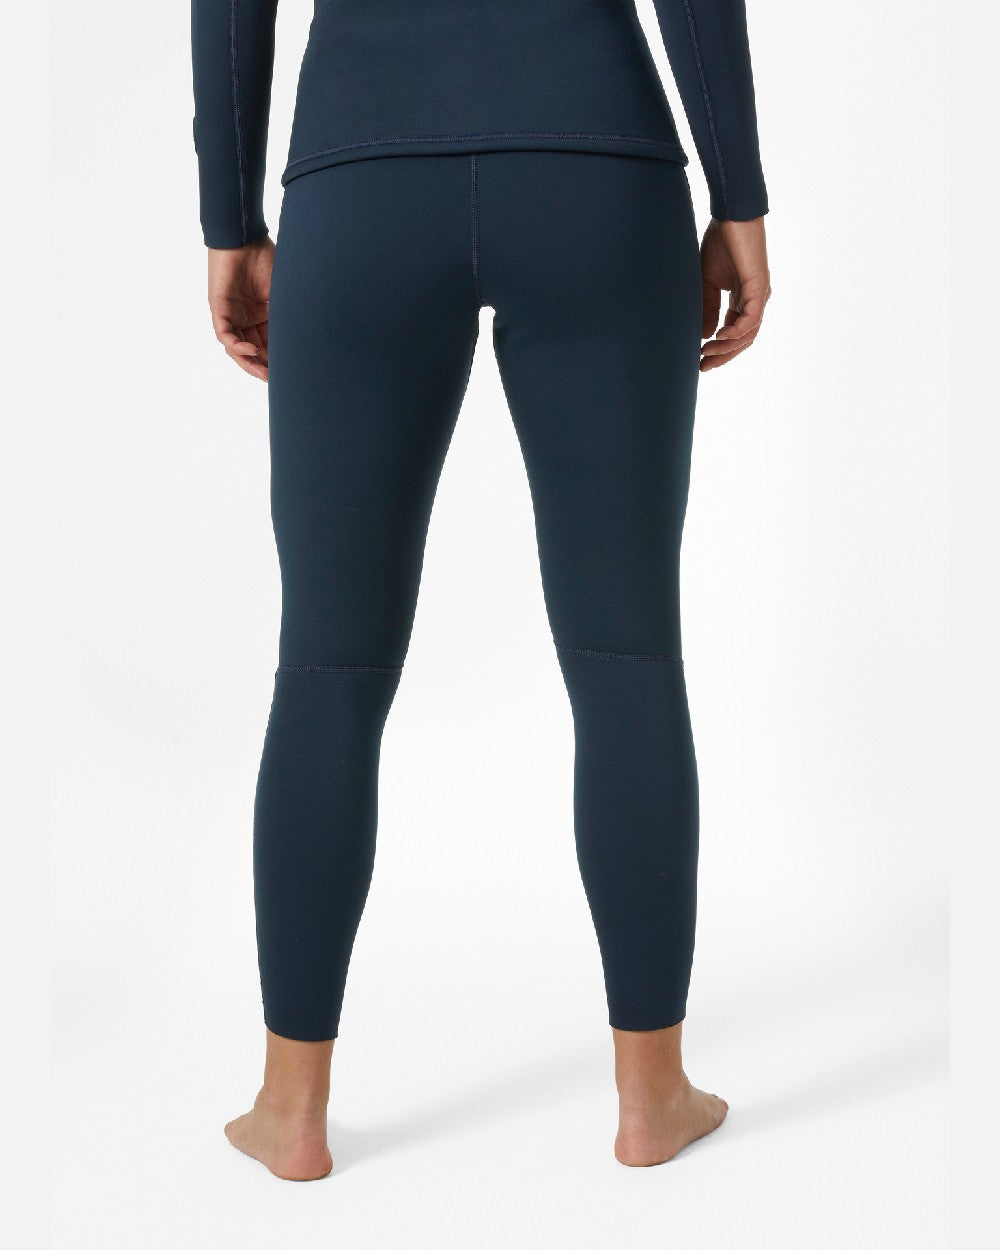 Navy coloured Helly Hansen Womens Waterwear Tights 2.0 on grey background 